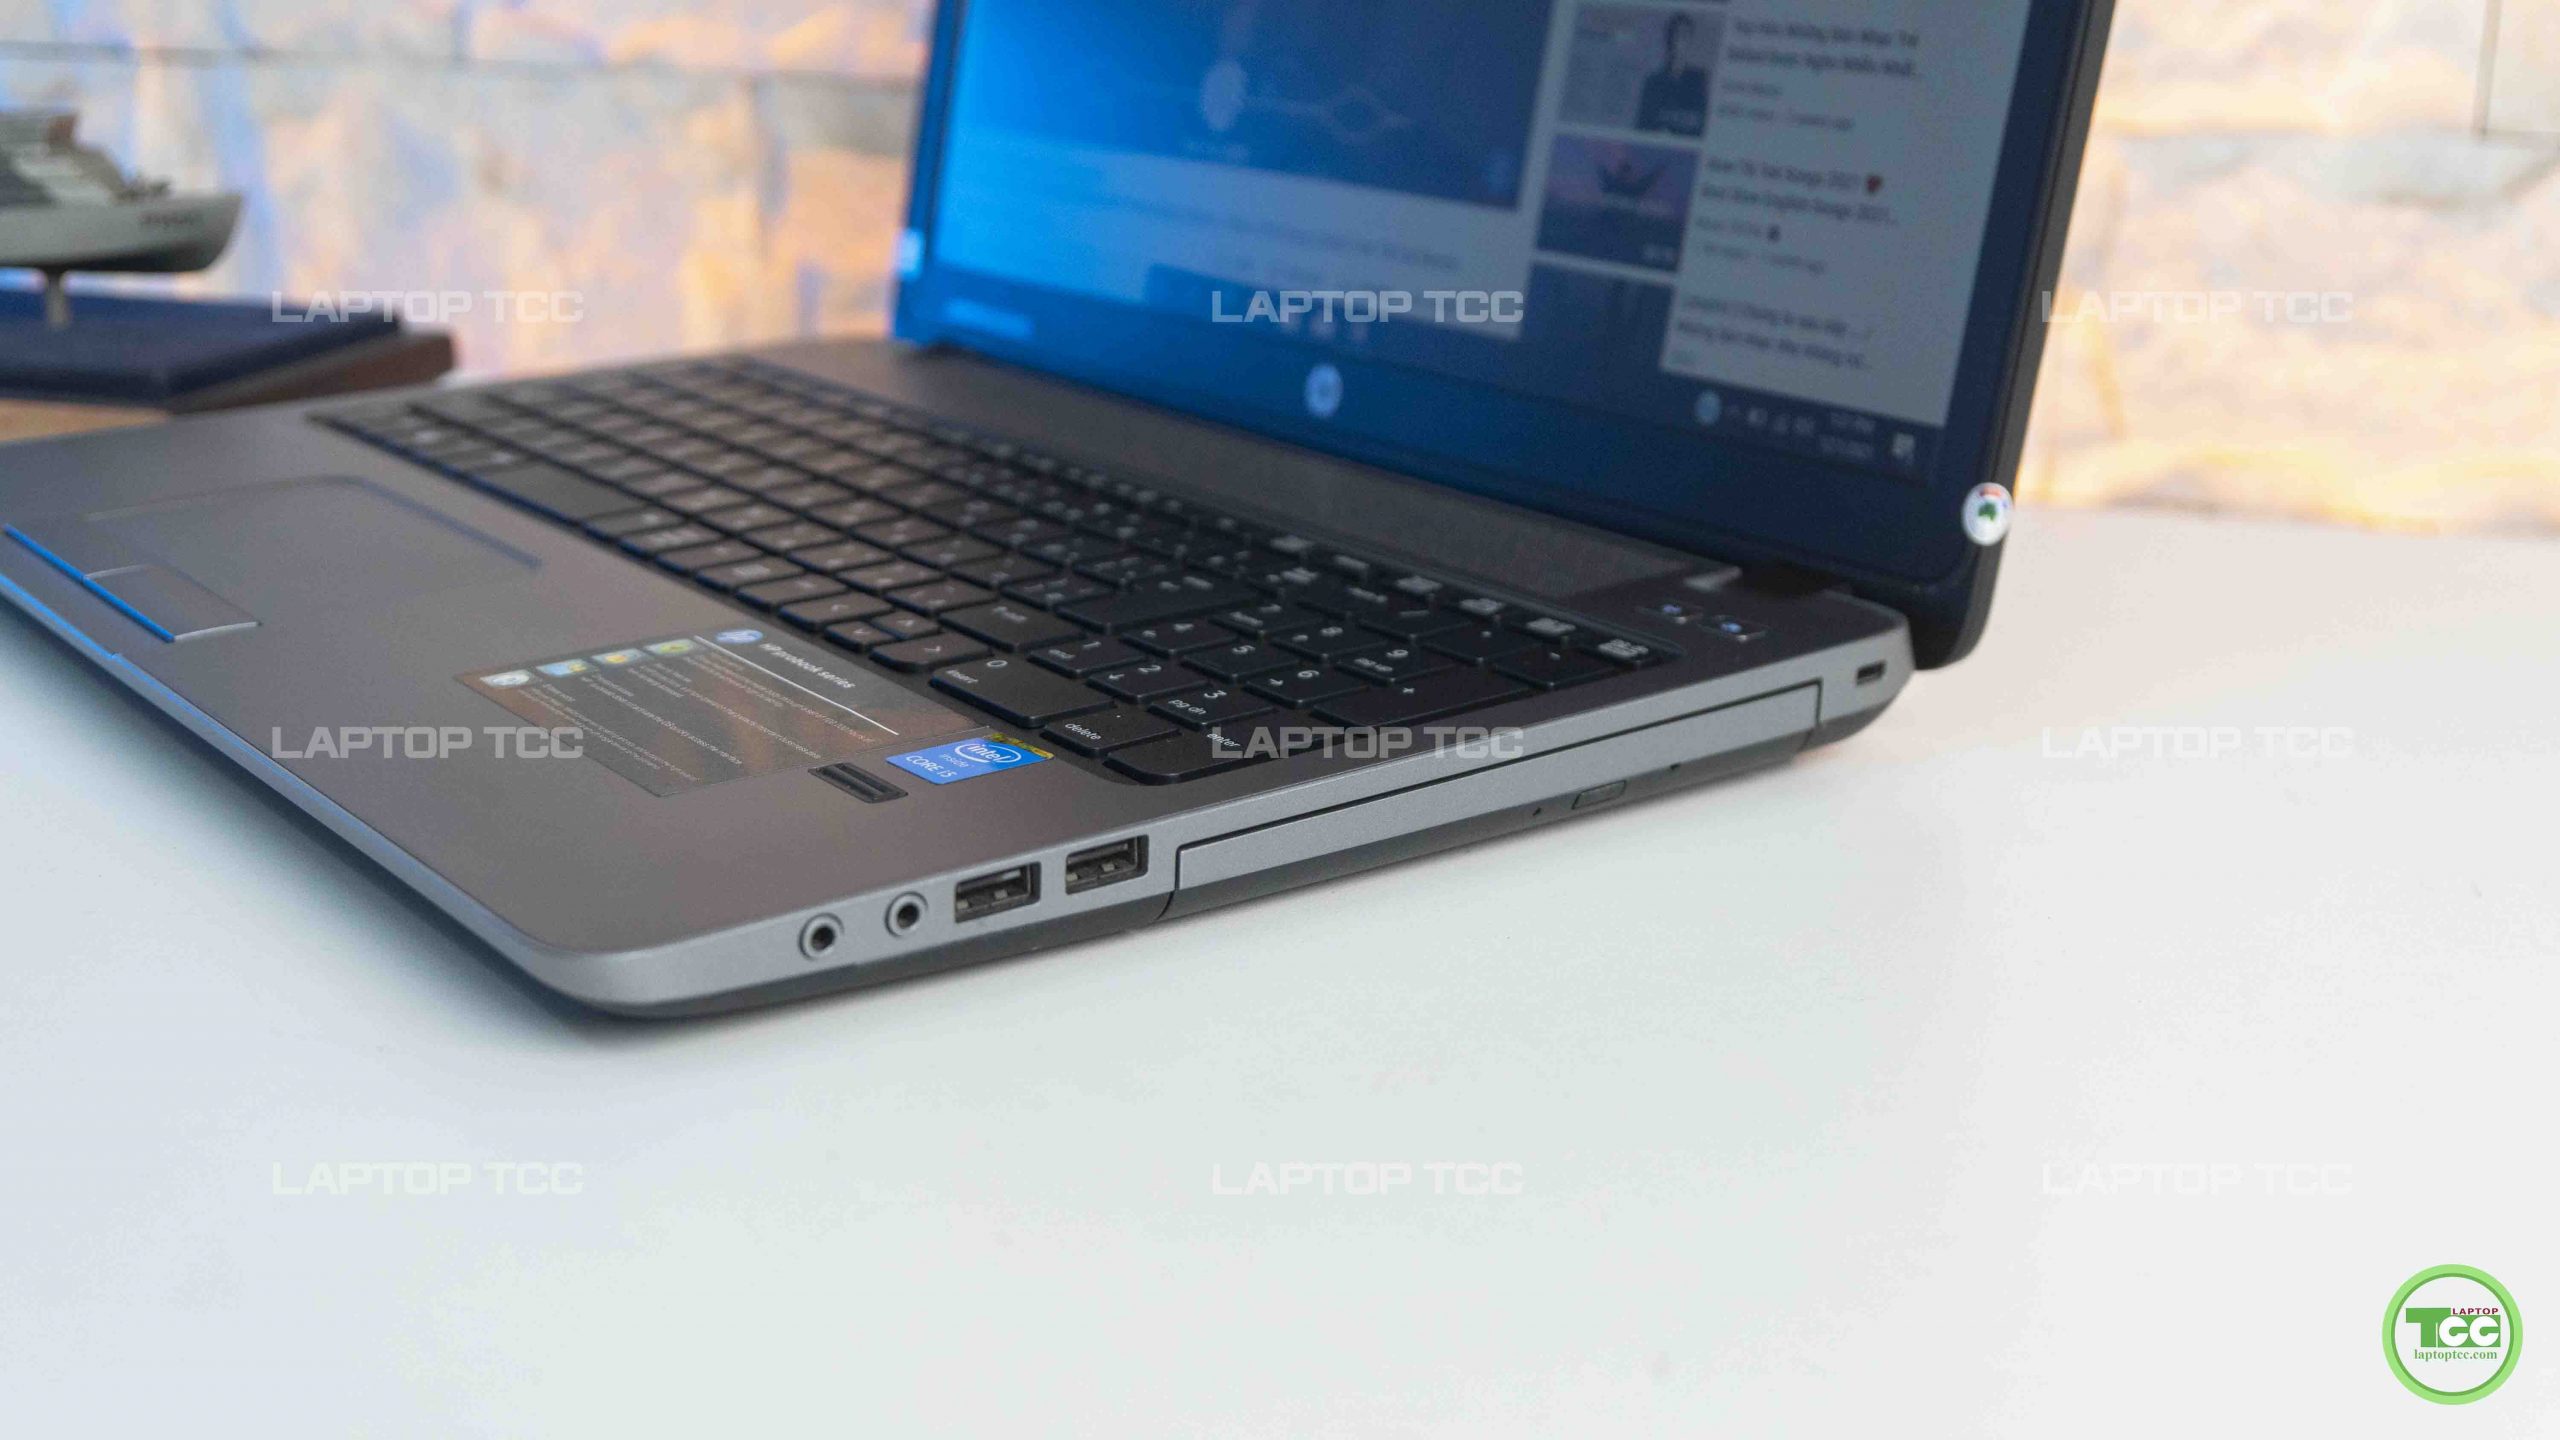 Laptop Cũ Hp Probook 450 G1 i5 4200M | RAM 4G | SSD 120GB | 15.6'' HD |  Card on